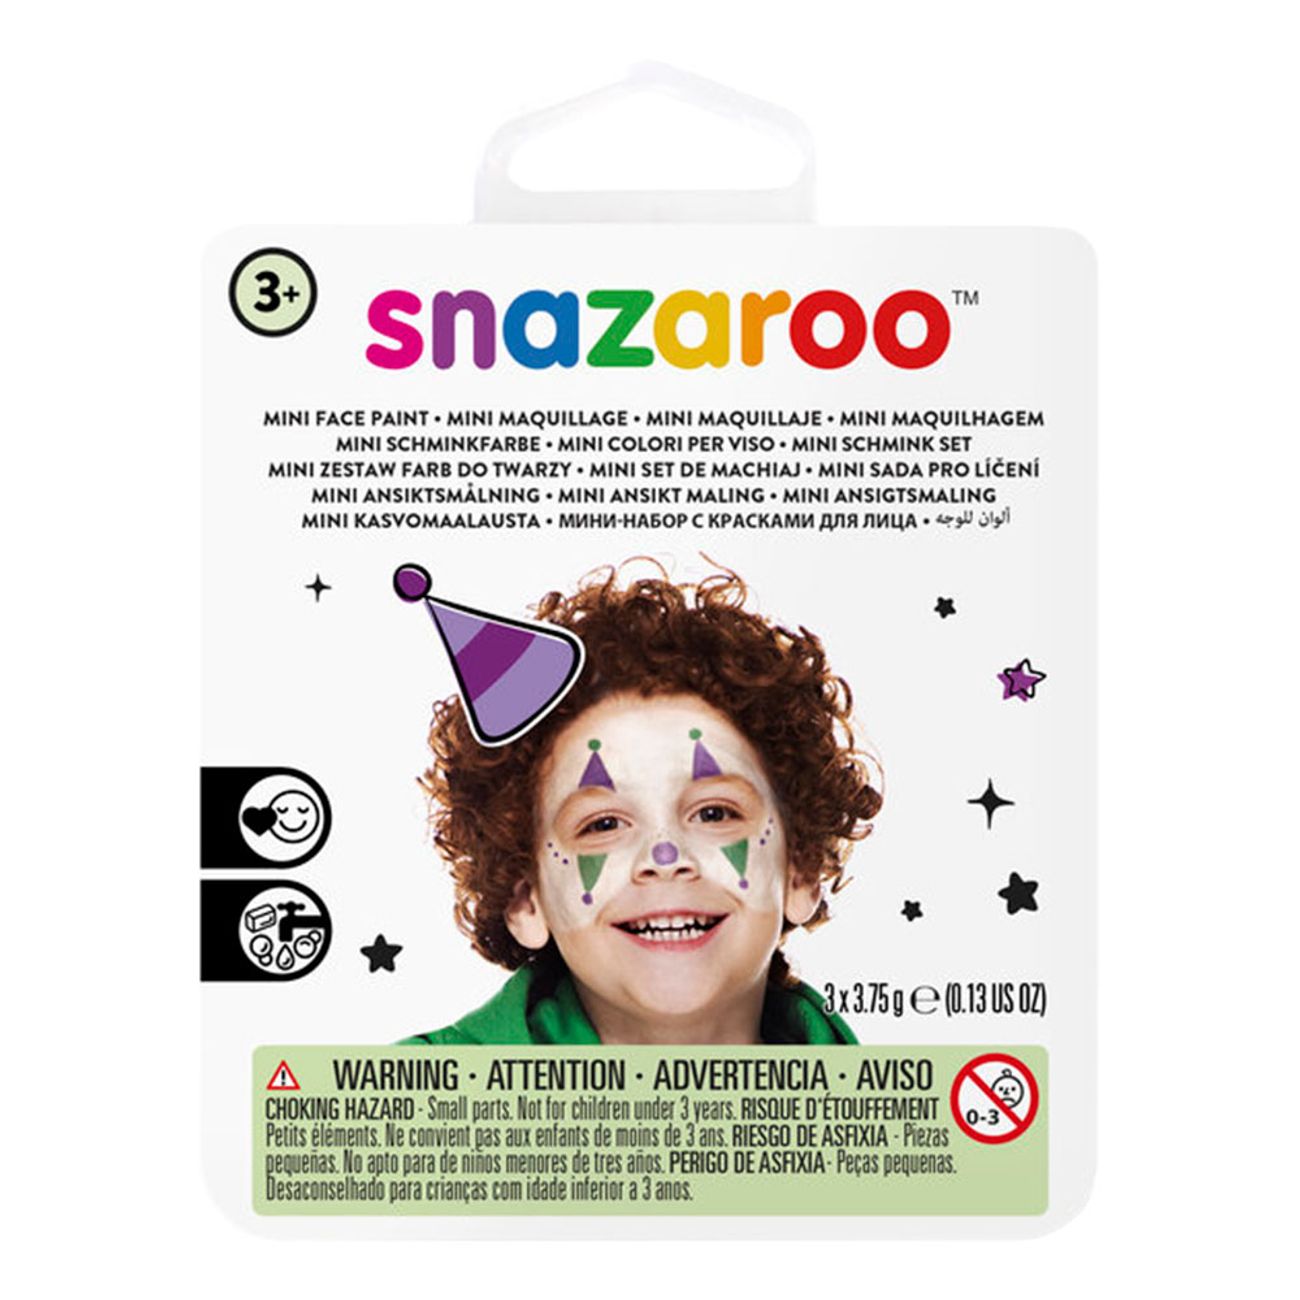 snazaroo-ansiktsfargset-mini-narr-88627-2